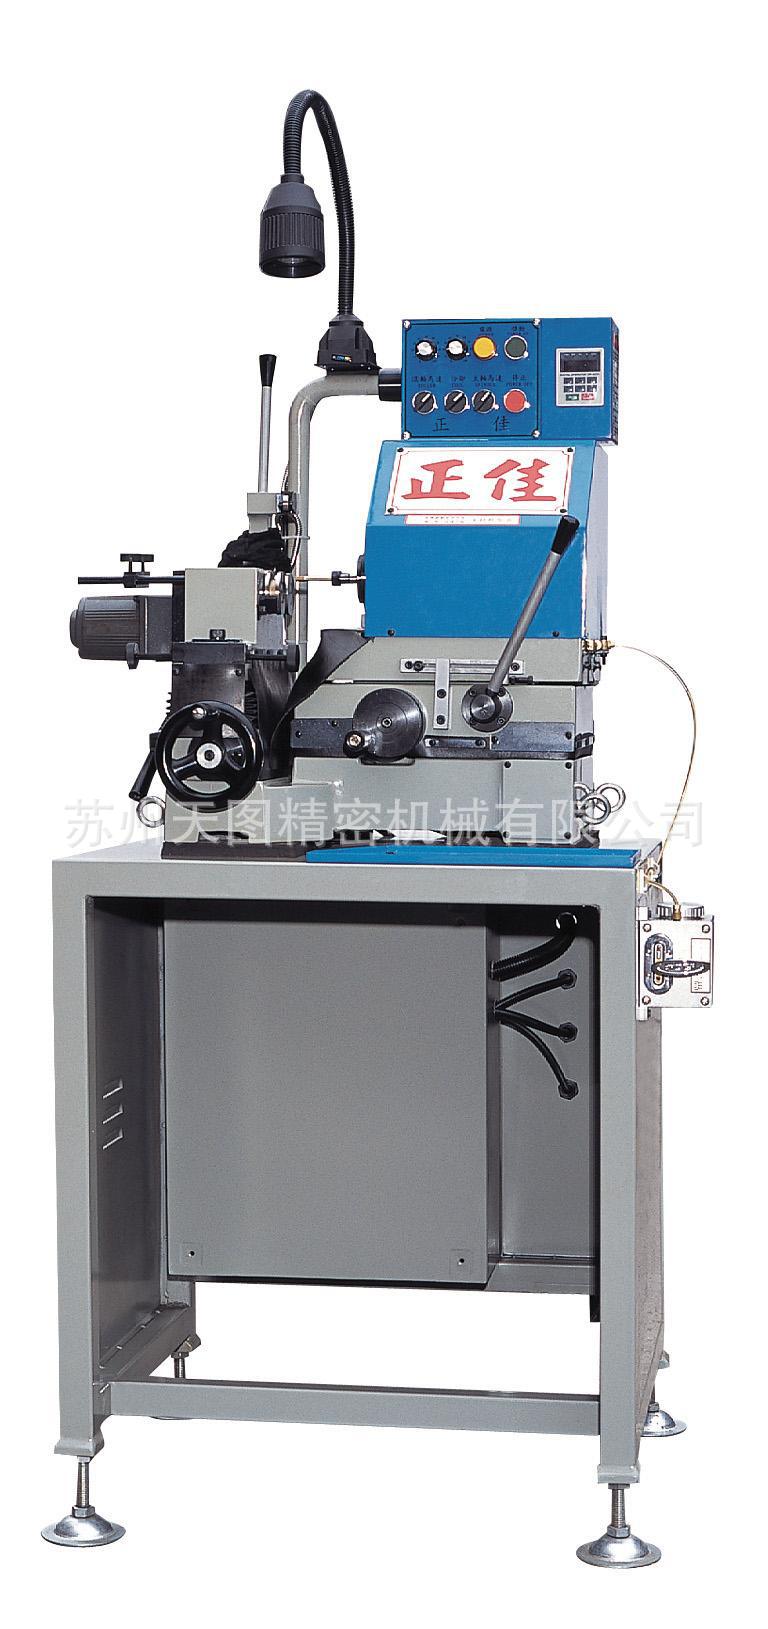 正佳高精度 精密型 内径研磨机批发 专业定制研磨机